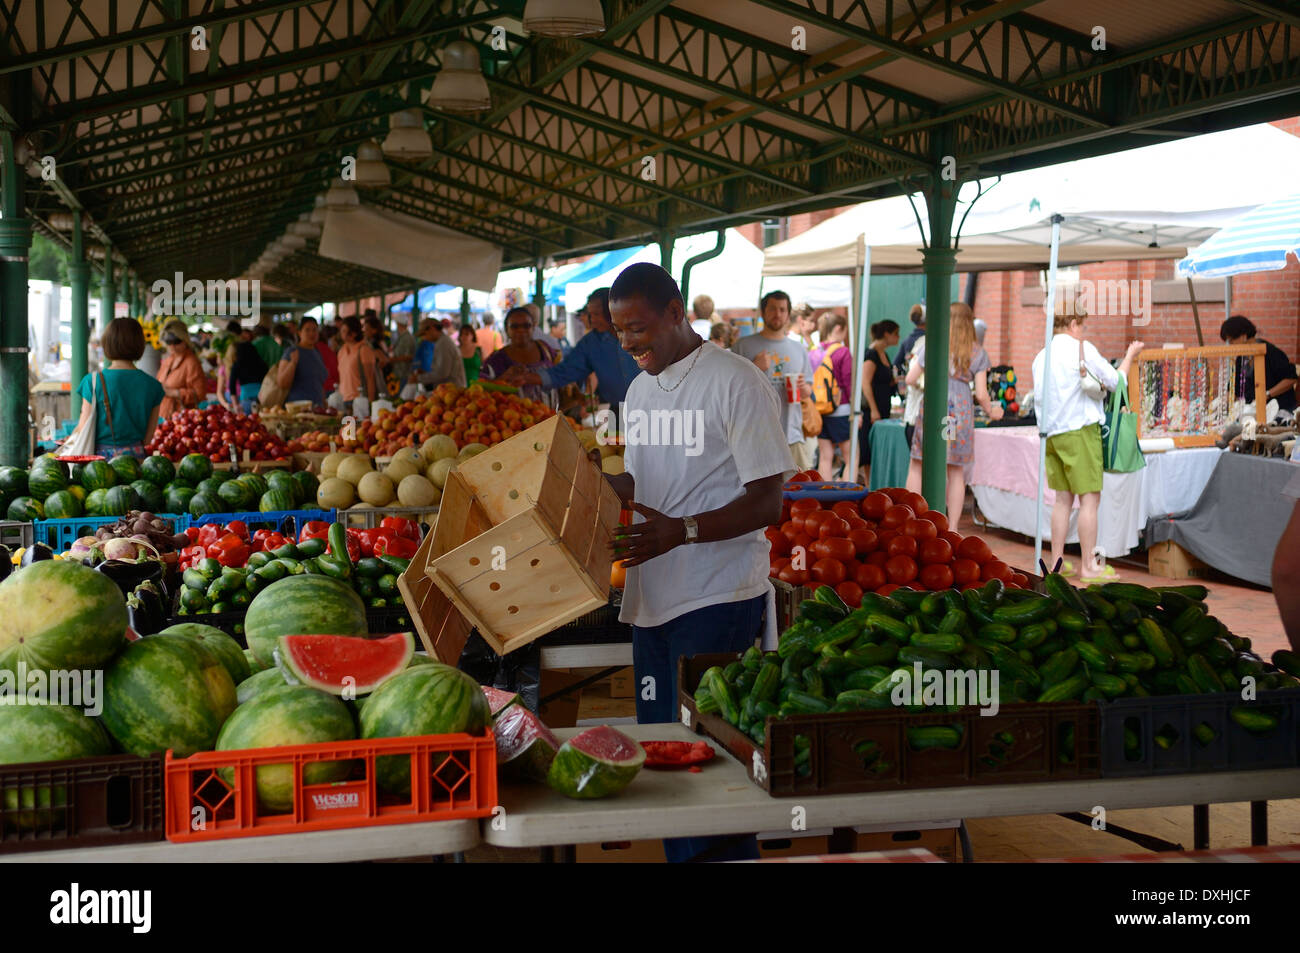 Il mercato degli agricoltori al mercato orientale. DC più antica azionata continuamente cibo fresco il mercato pubblico. Washington D.C. Stati Uniti d'America Foto Stock